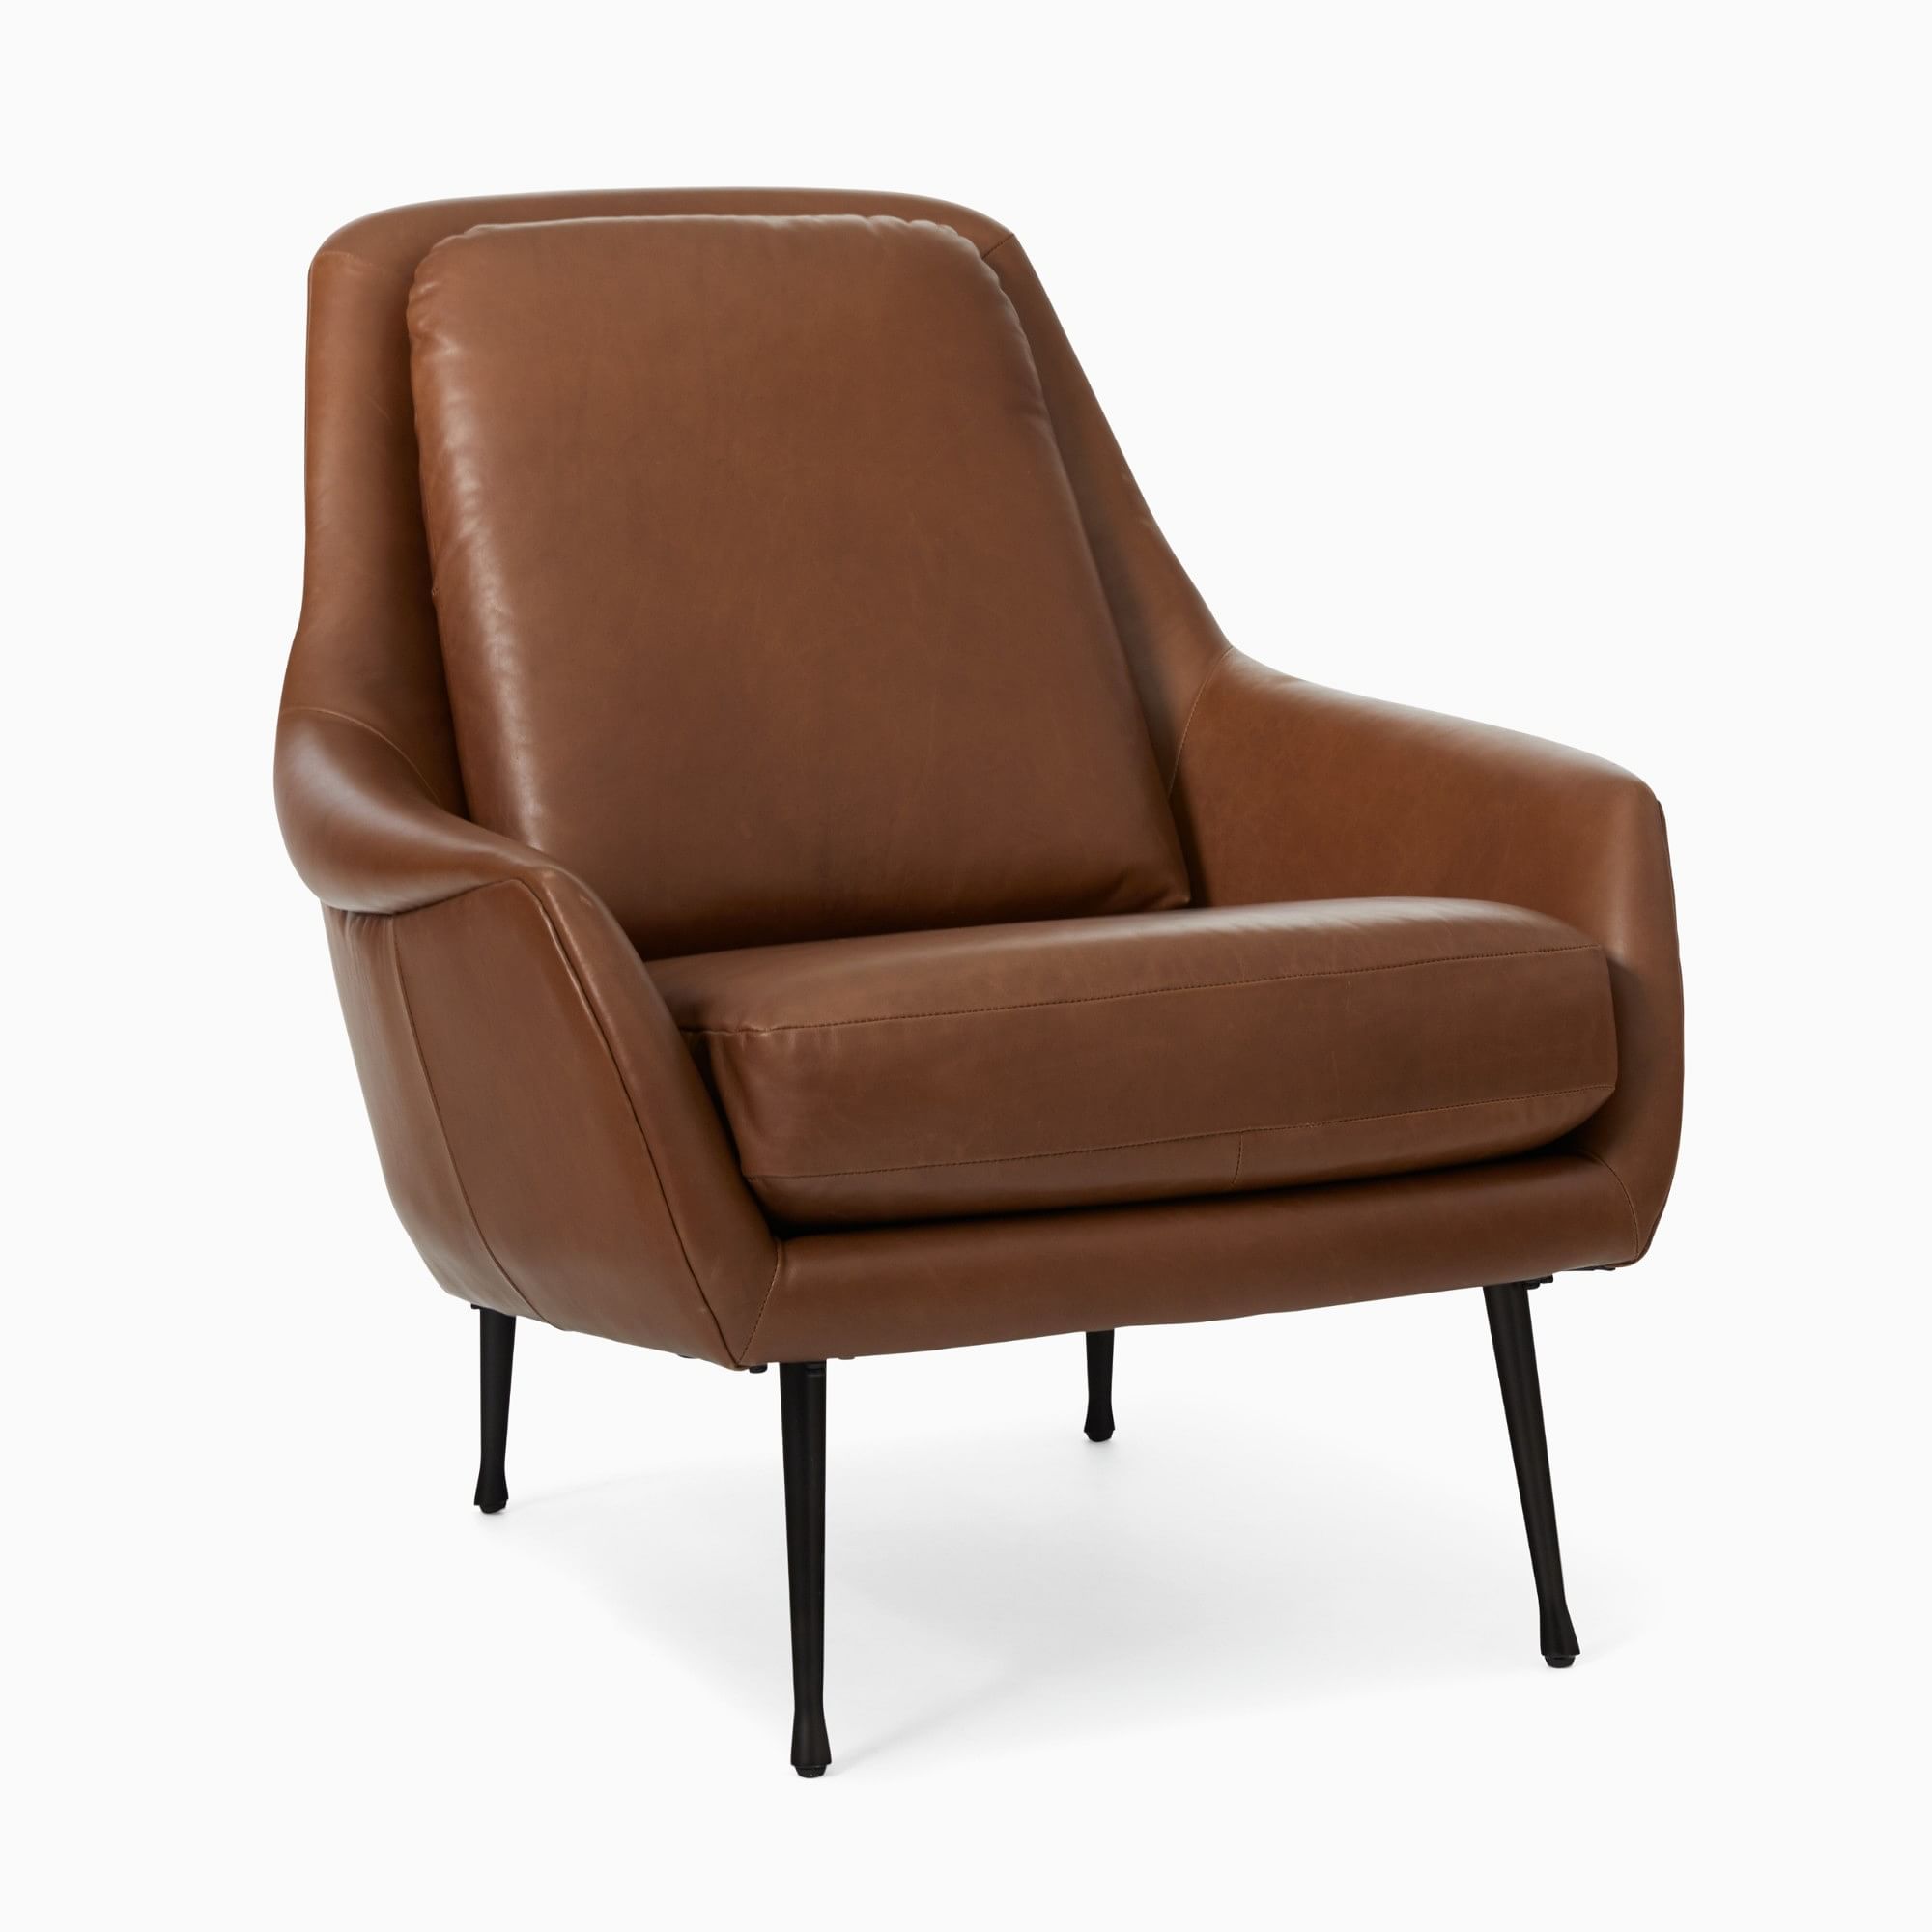 Lottie Leather Chair - Metal Legs | West Elm